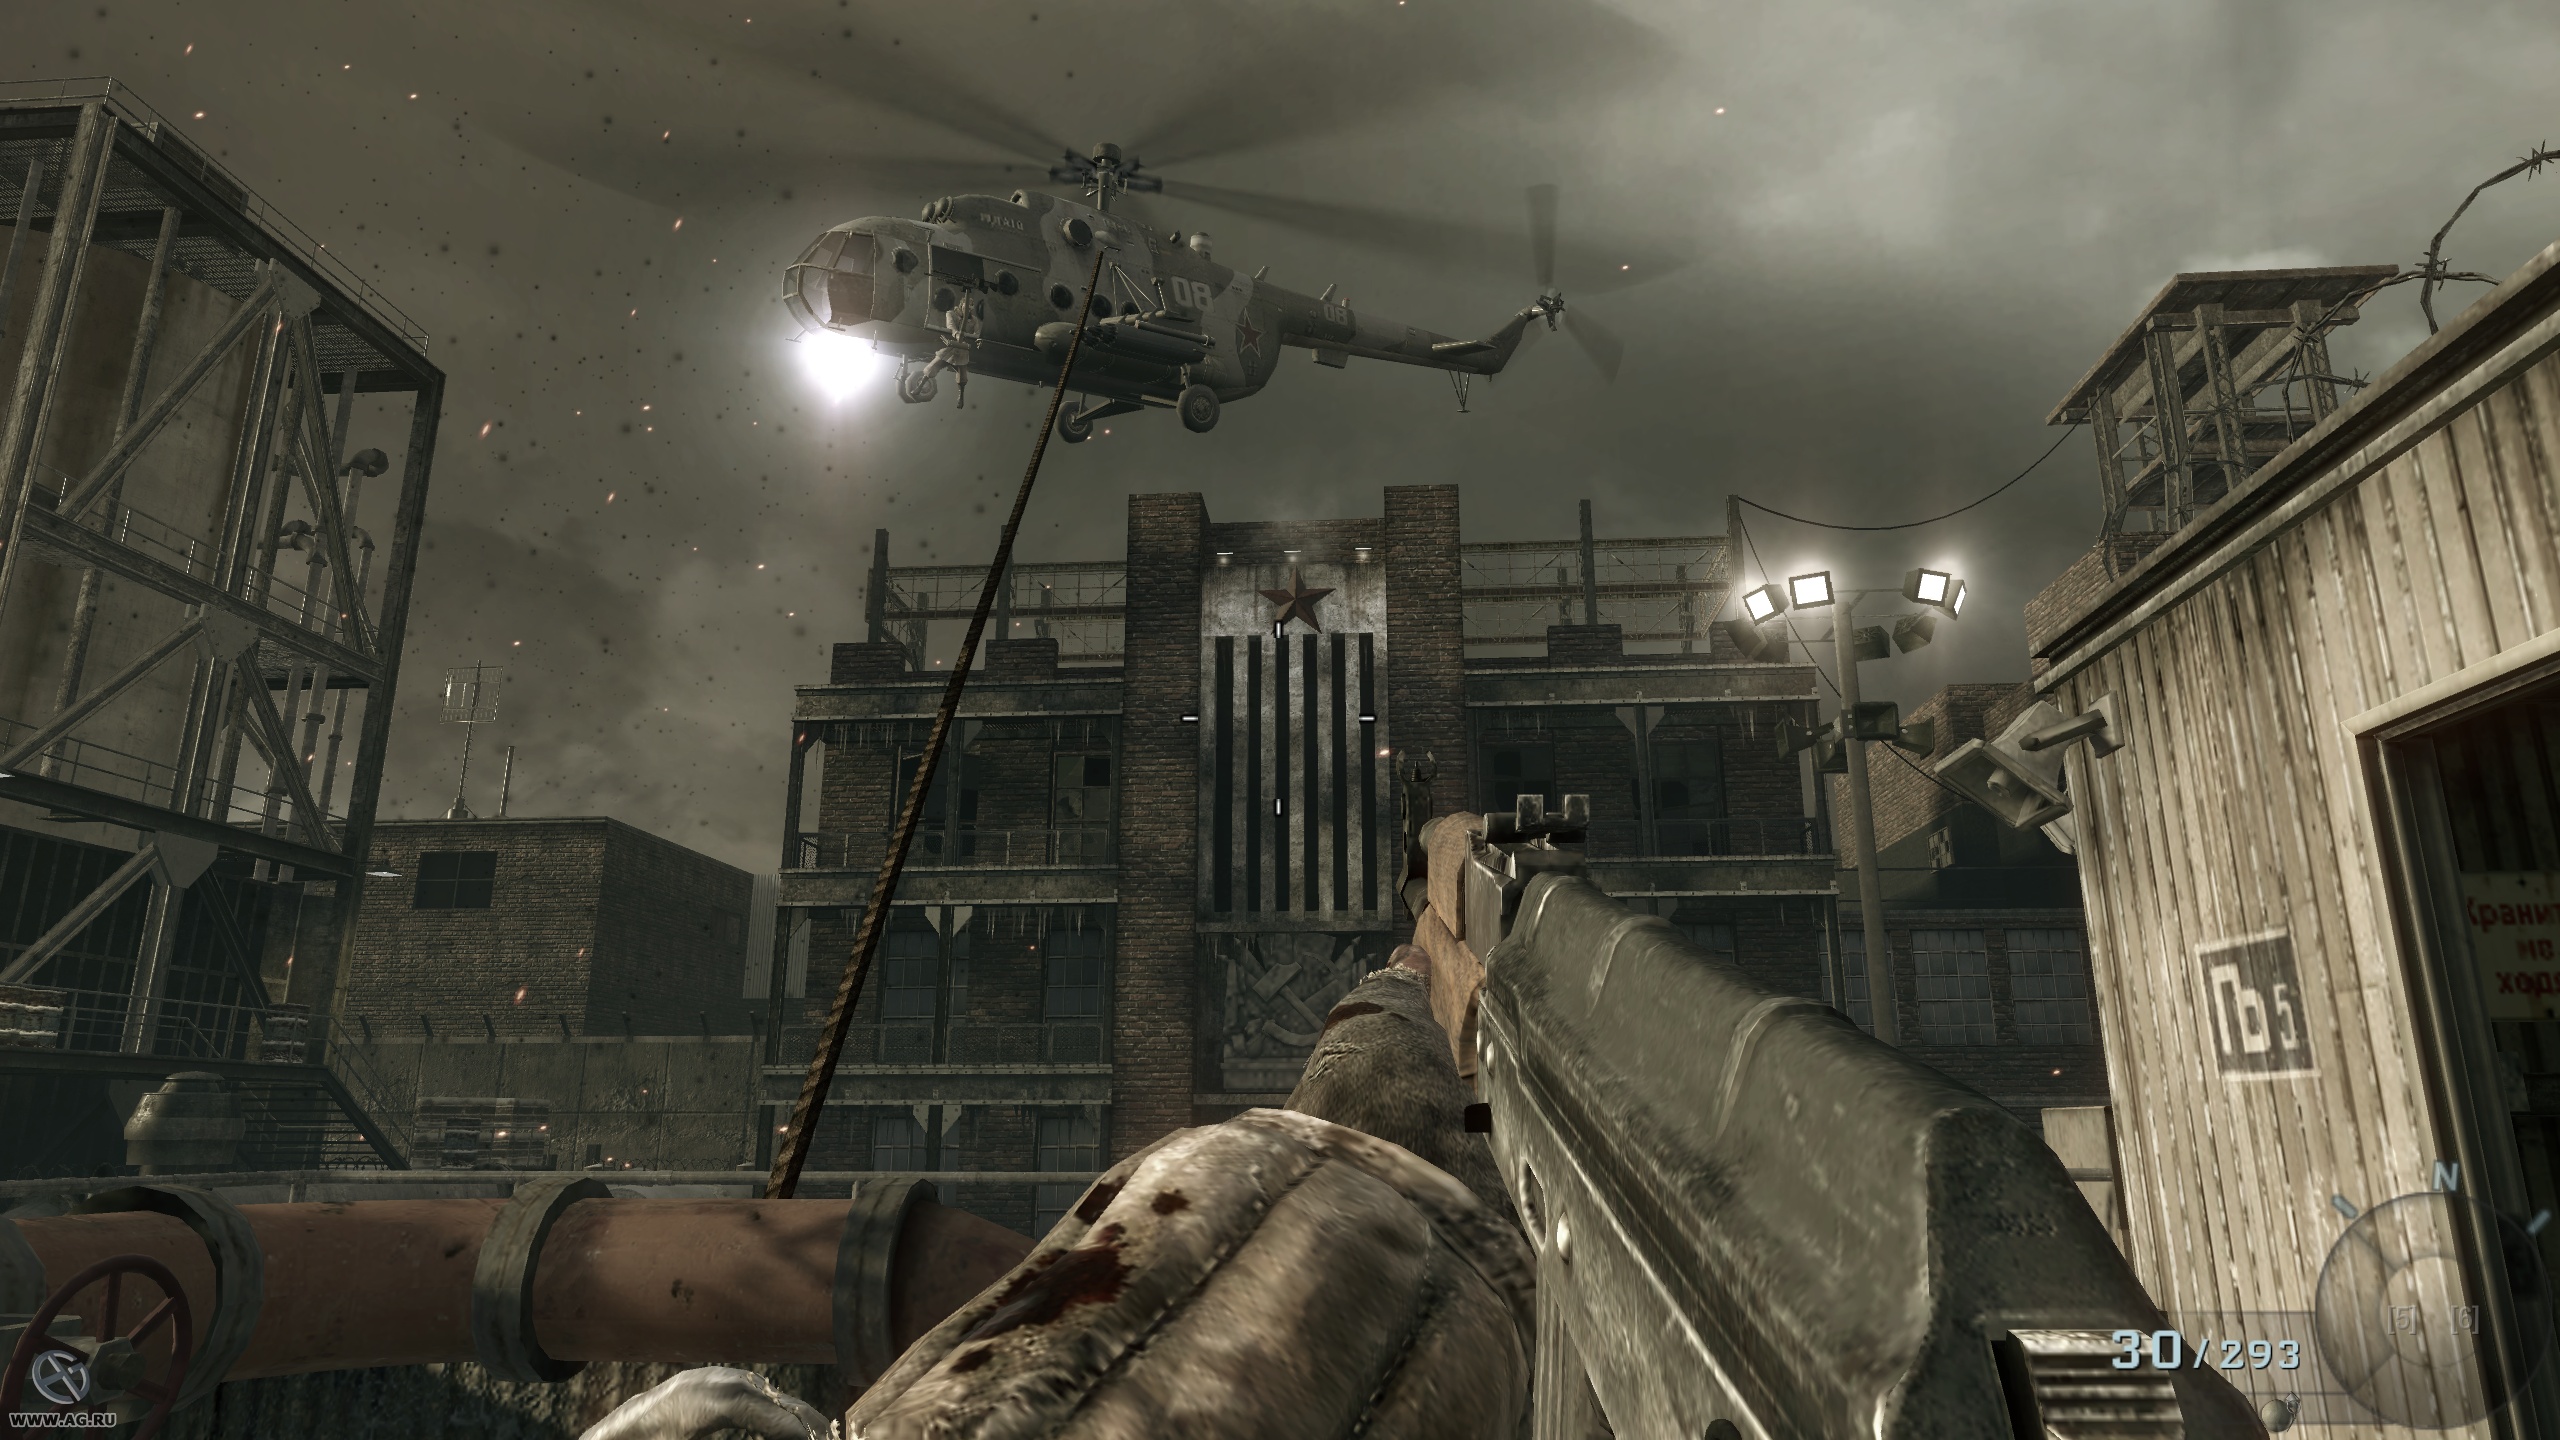 Игра от механиков калов дьюти. Игра Call of Duty 2010. Black ops 2010. Call of Duty ops 1. Call of Duty Black ops 2010.